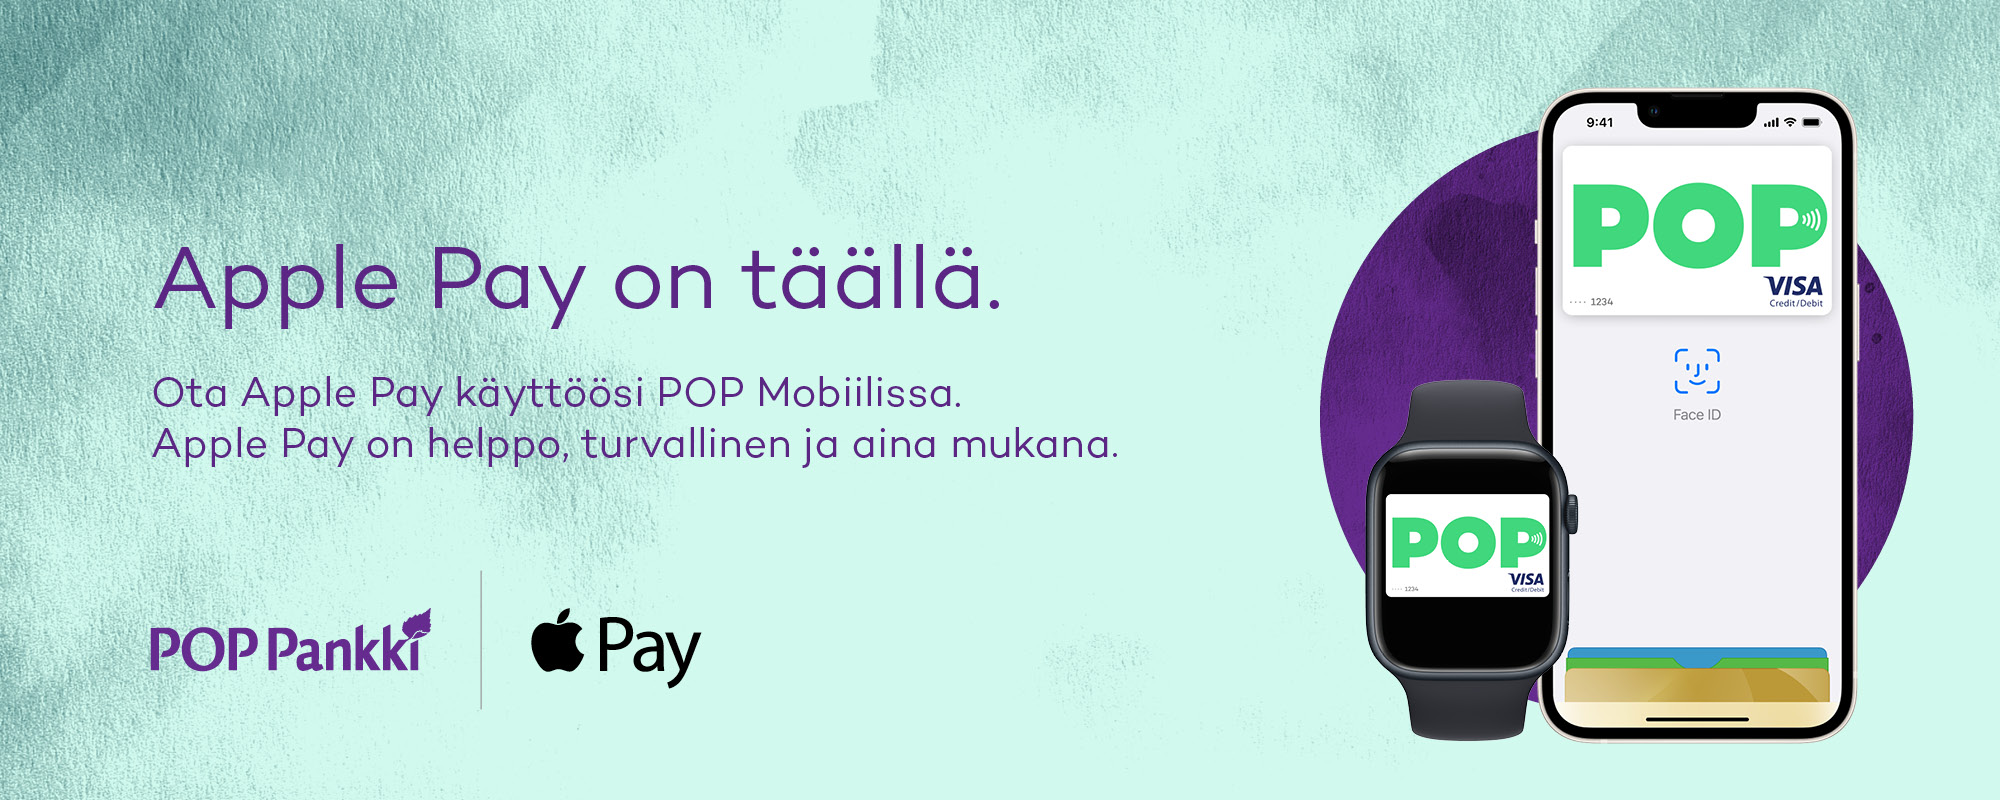 Apple Pay mainos: Ota turvallinen Apple Pay käyttöön POP Mobiilissa.